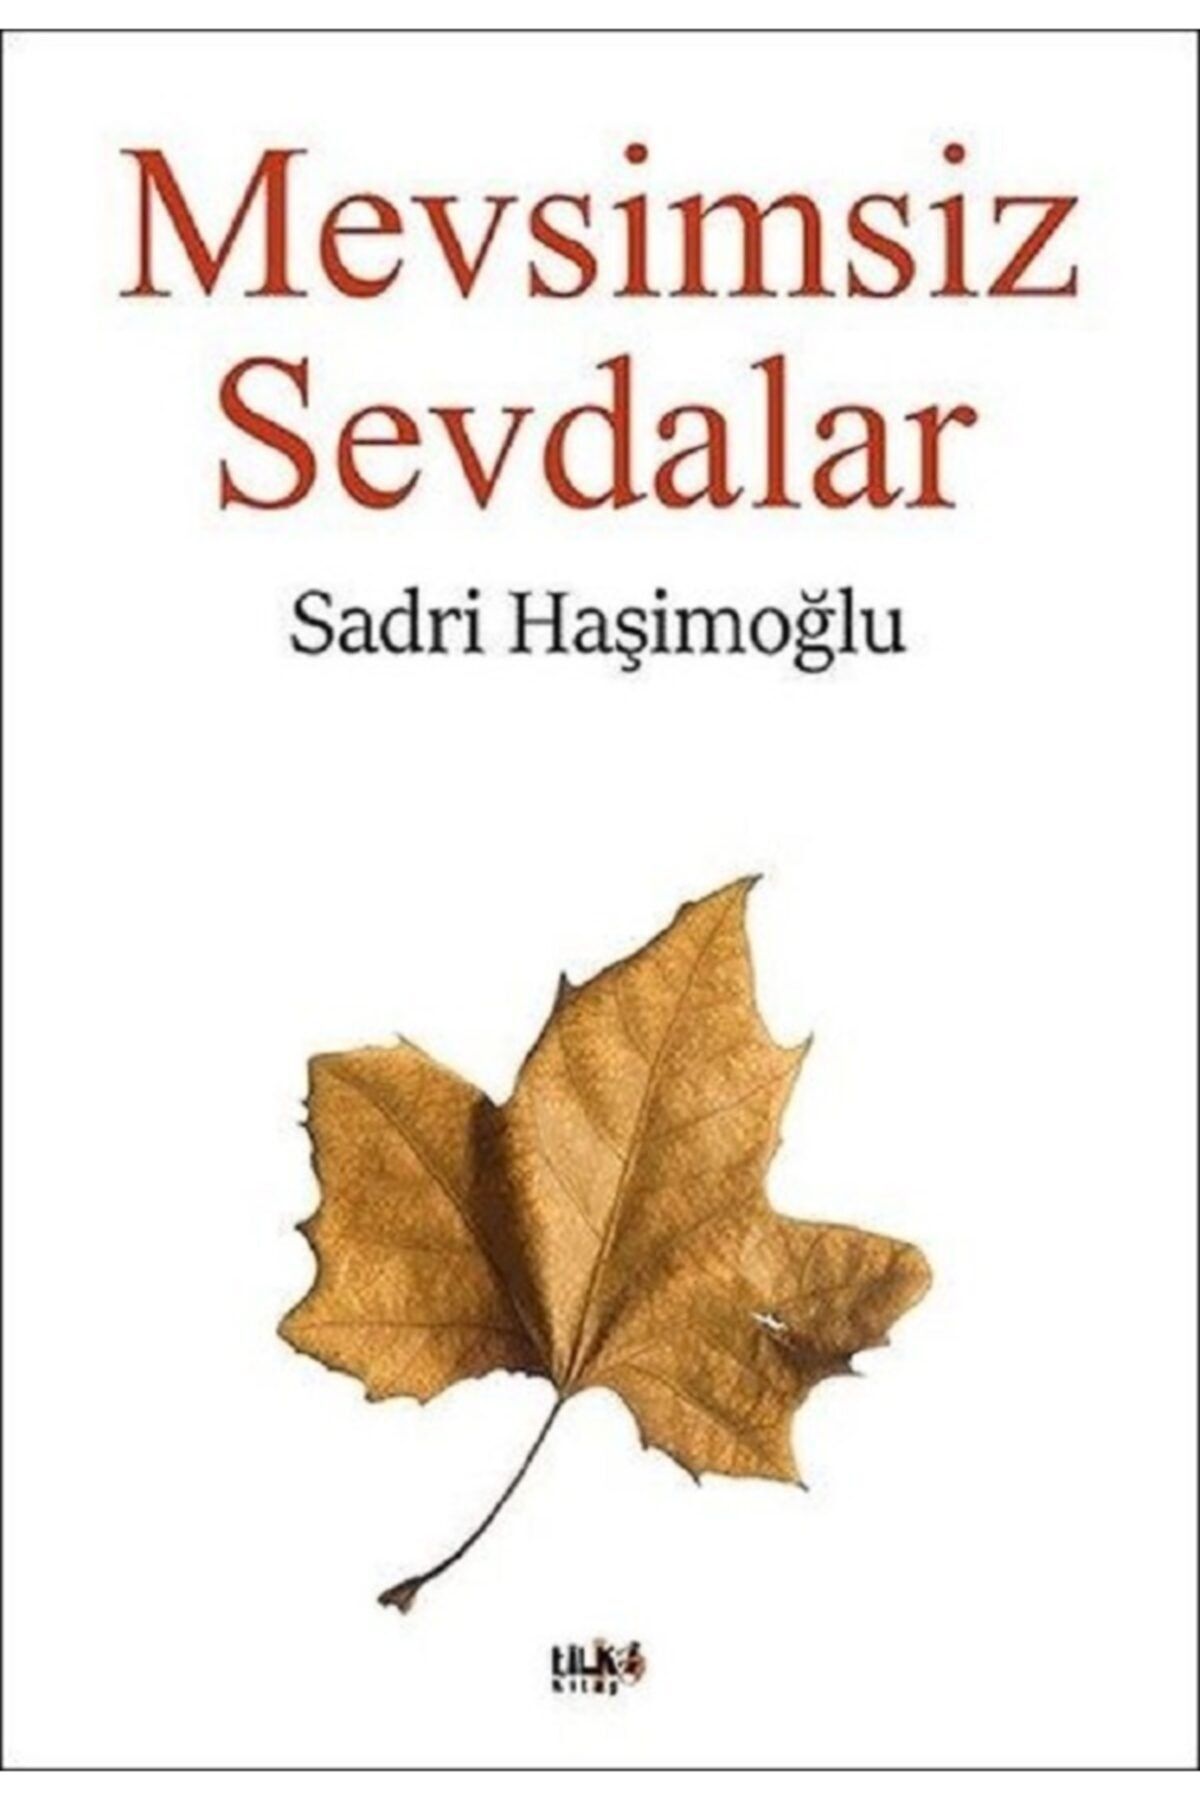 Tilki Kitap Mevsimsiz Sevdalar - Sadri Haşimoğlu